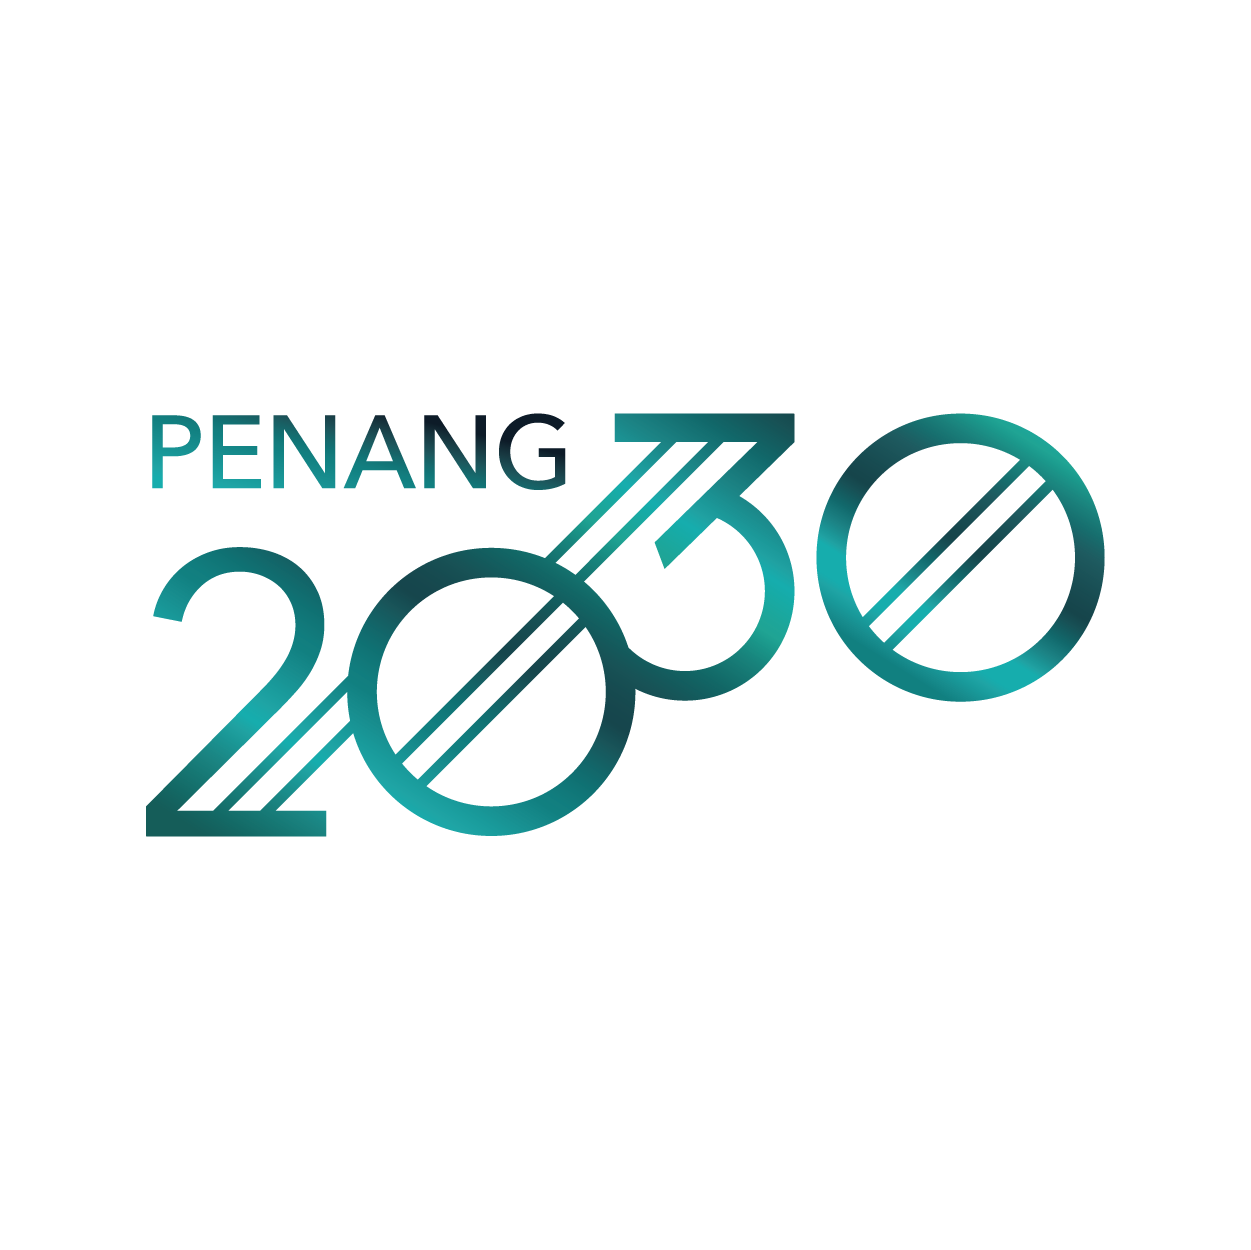 Penang 2030 Logo